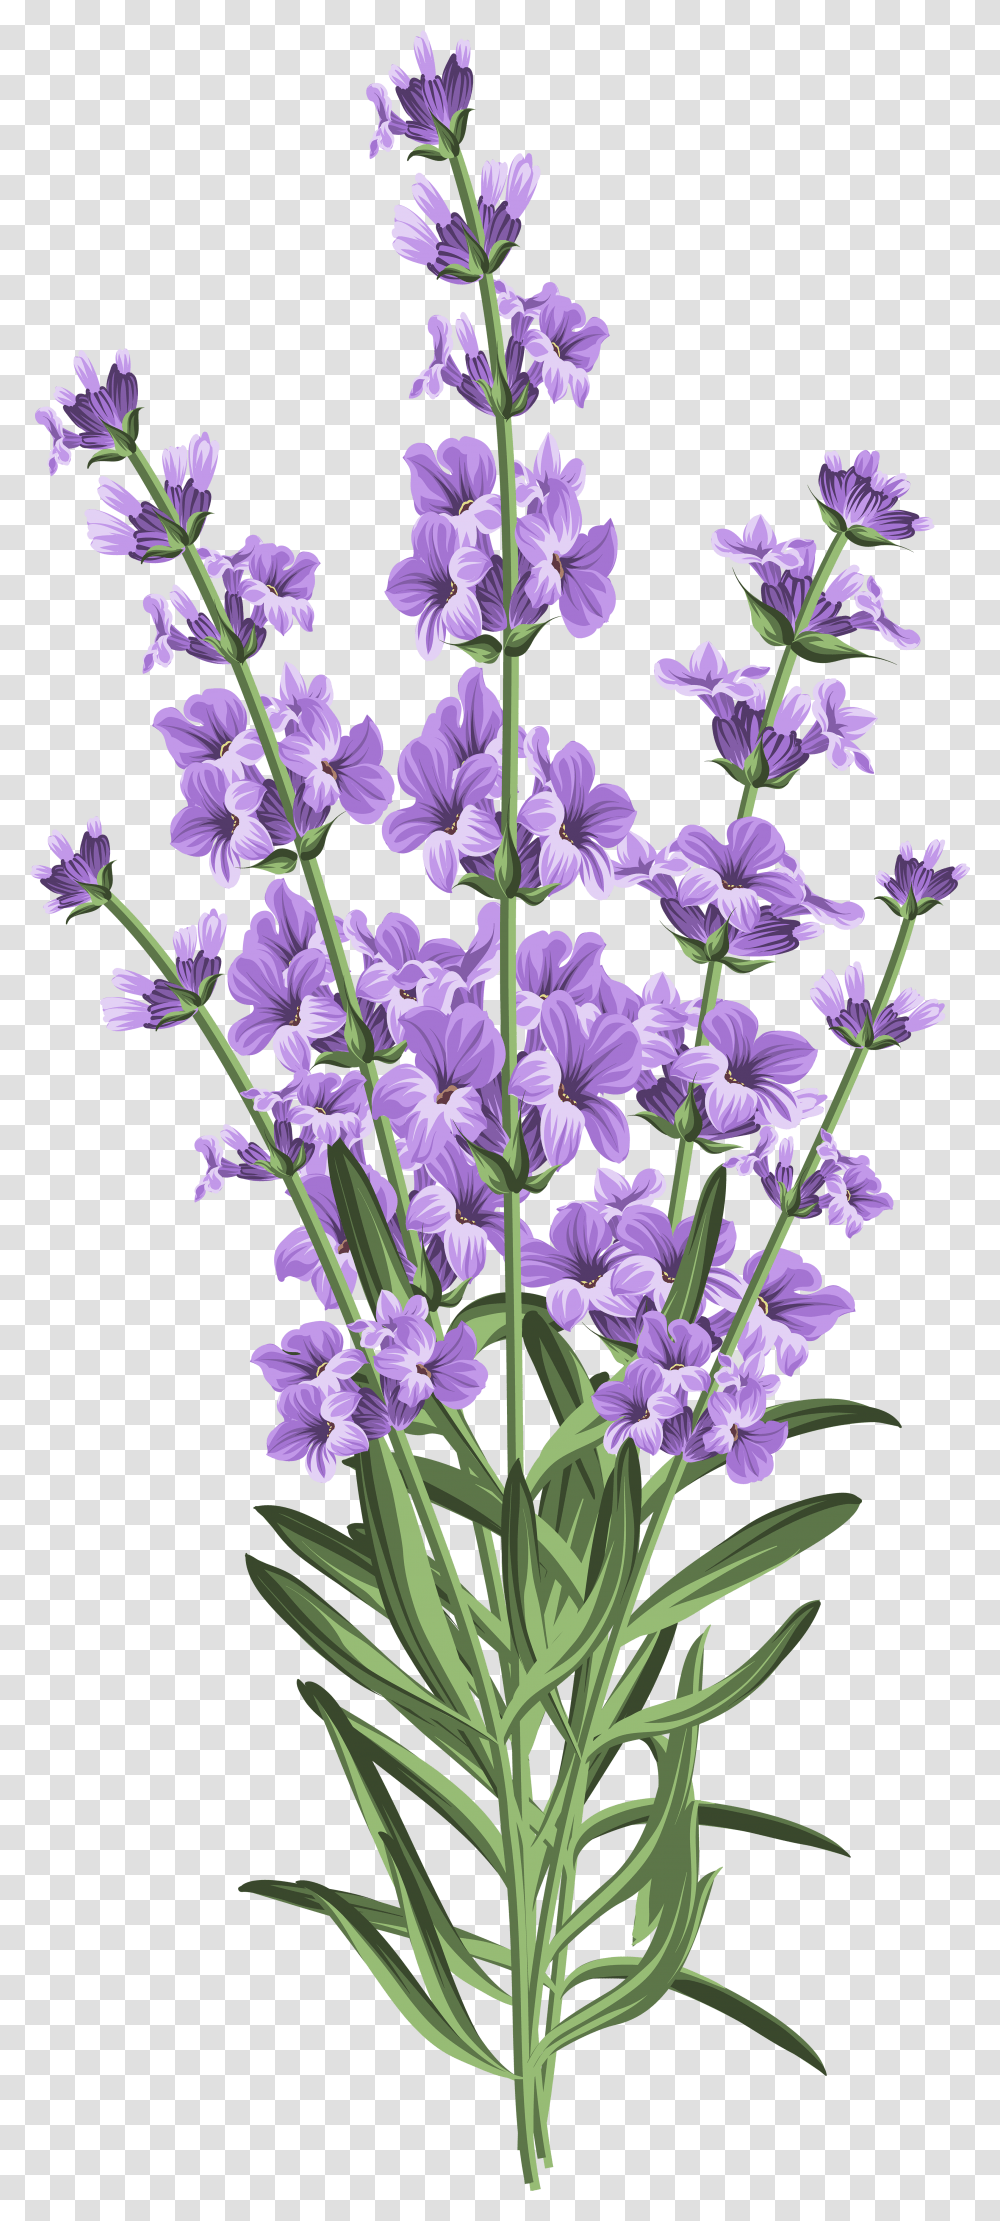 Lavender Flowers & Free Flowerspng Background Lavender Flower Transparent Png